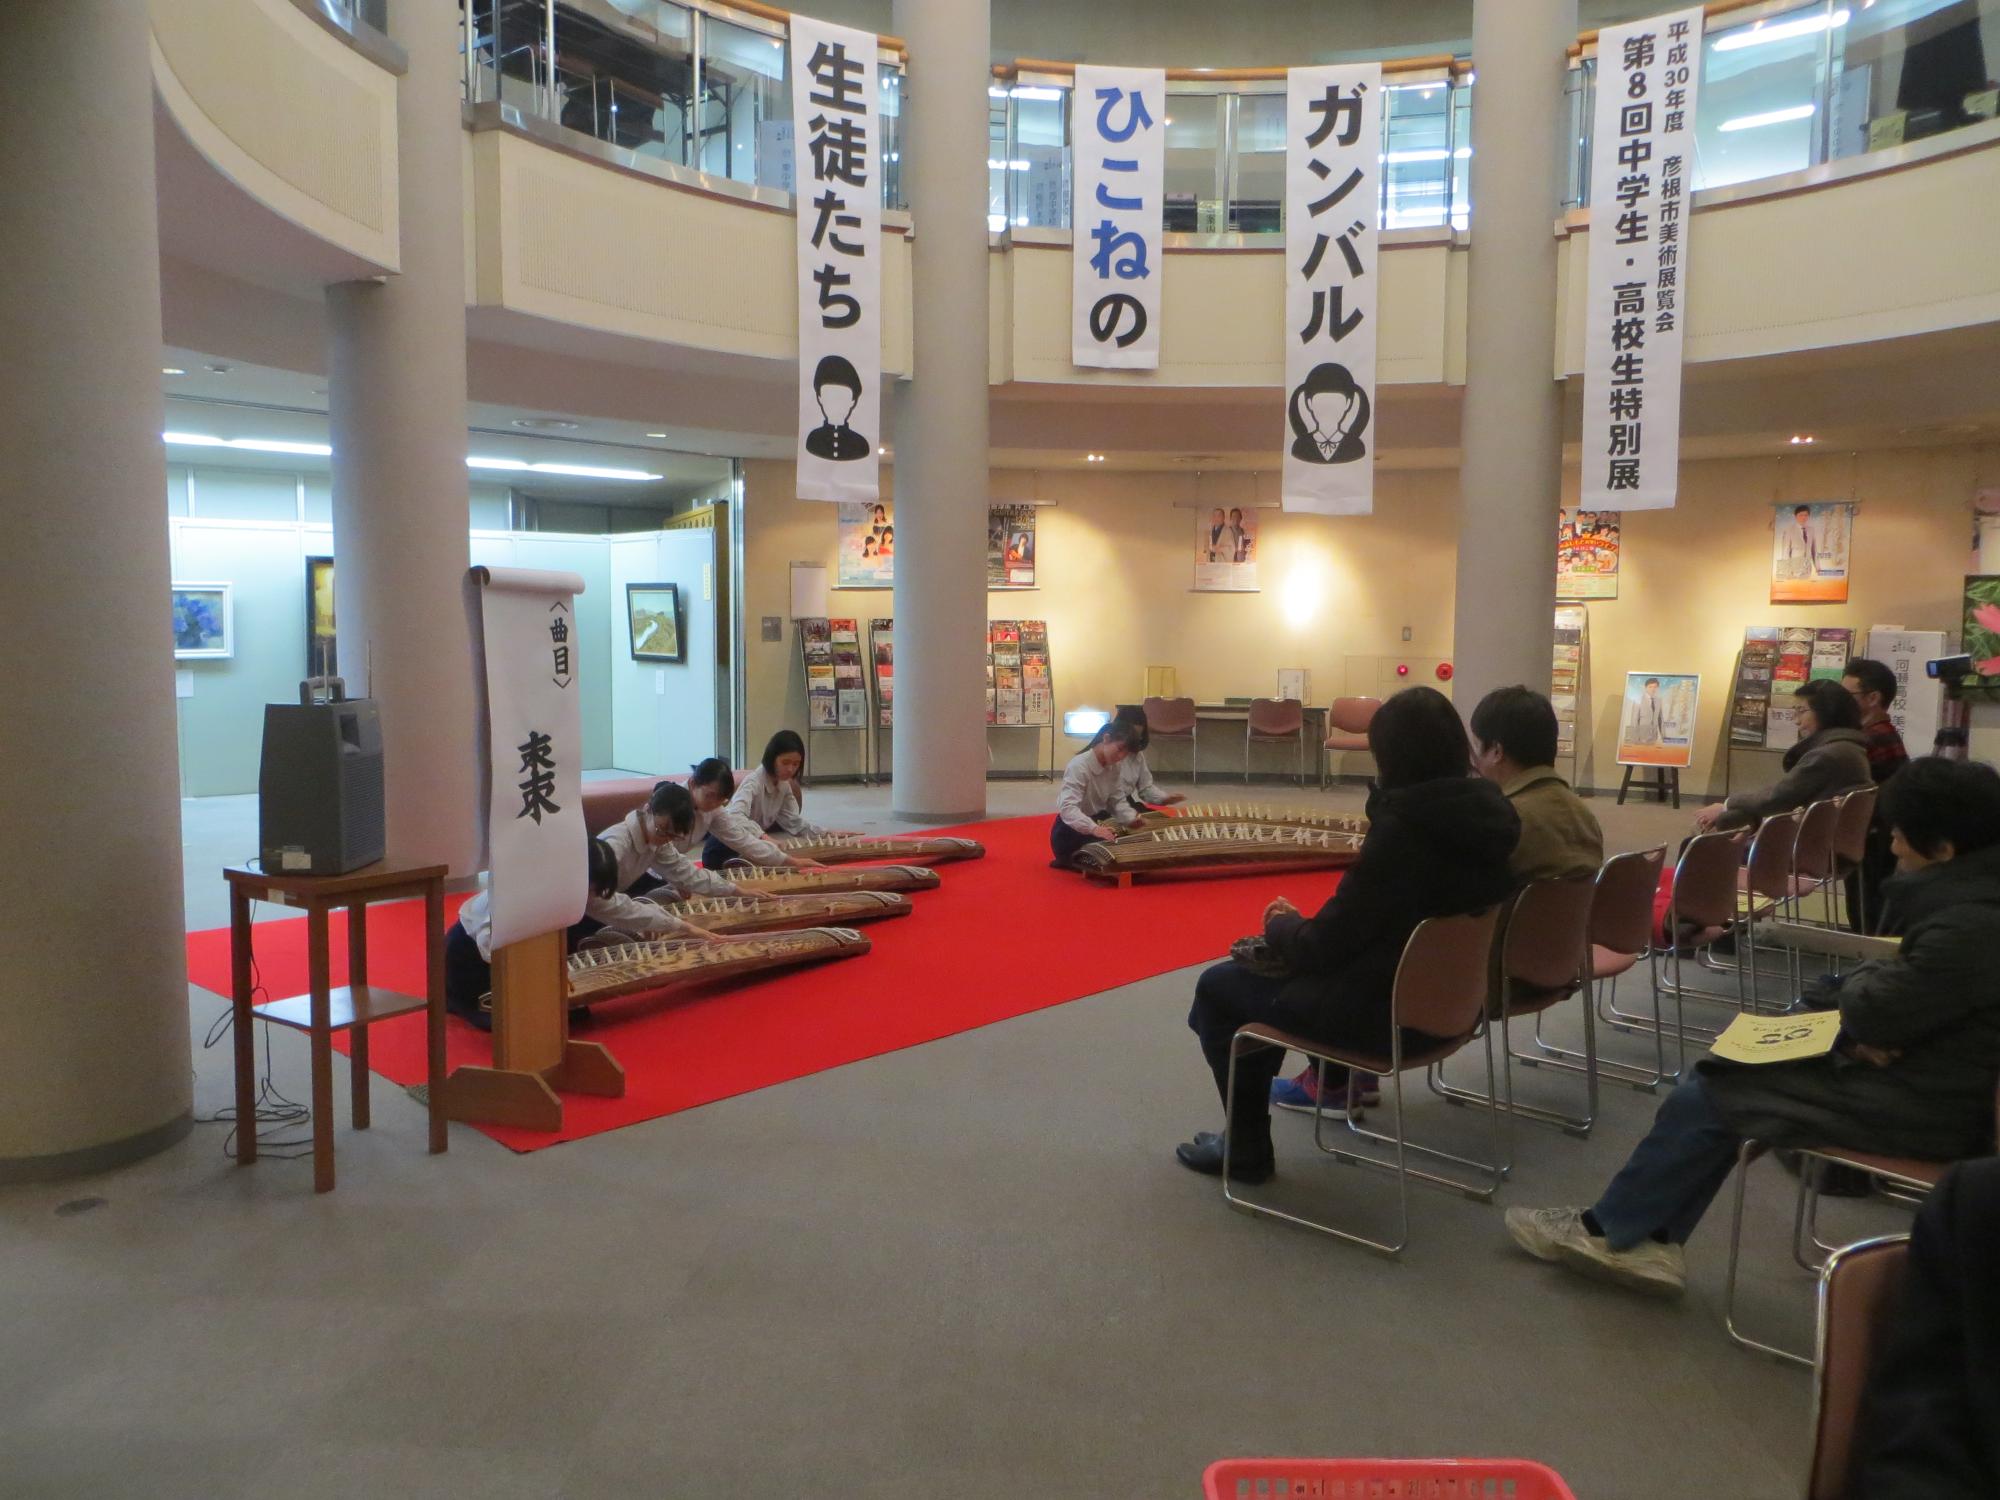 彦根東高等学校筝曲部 演奏の様子と観客の様子